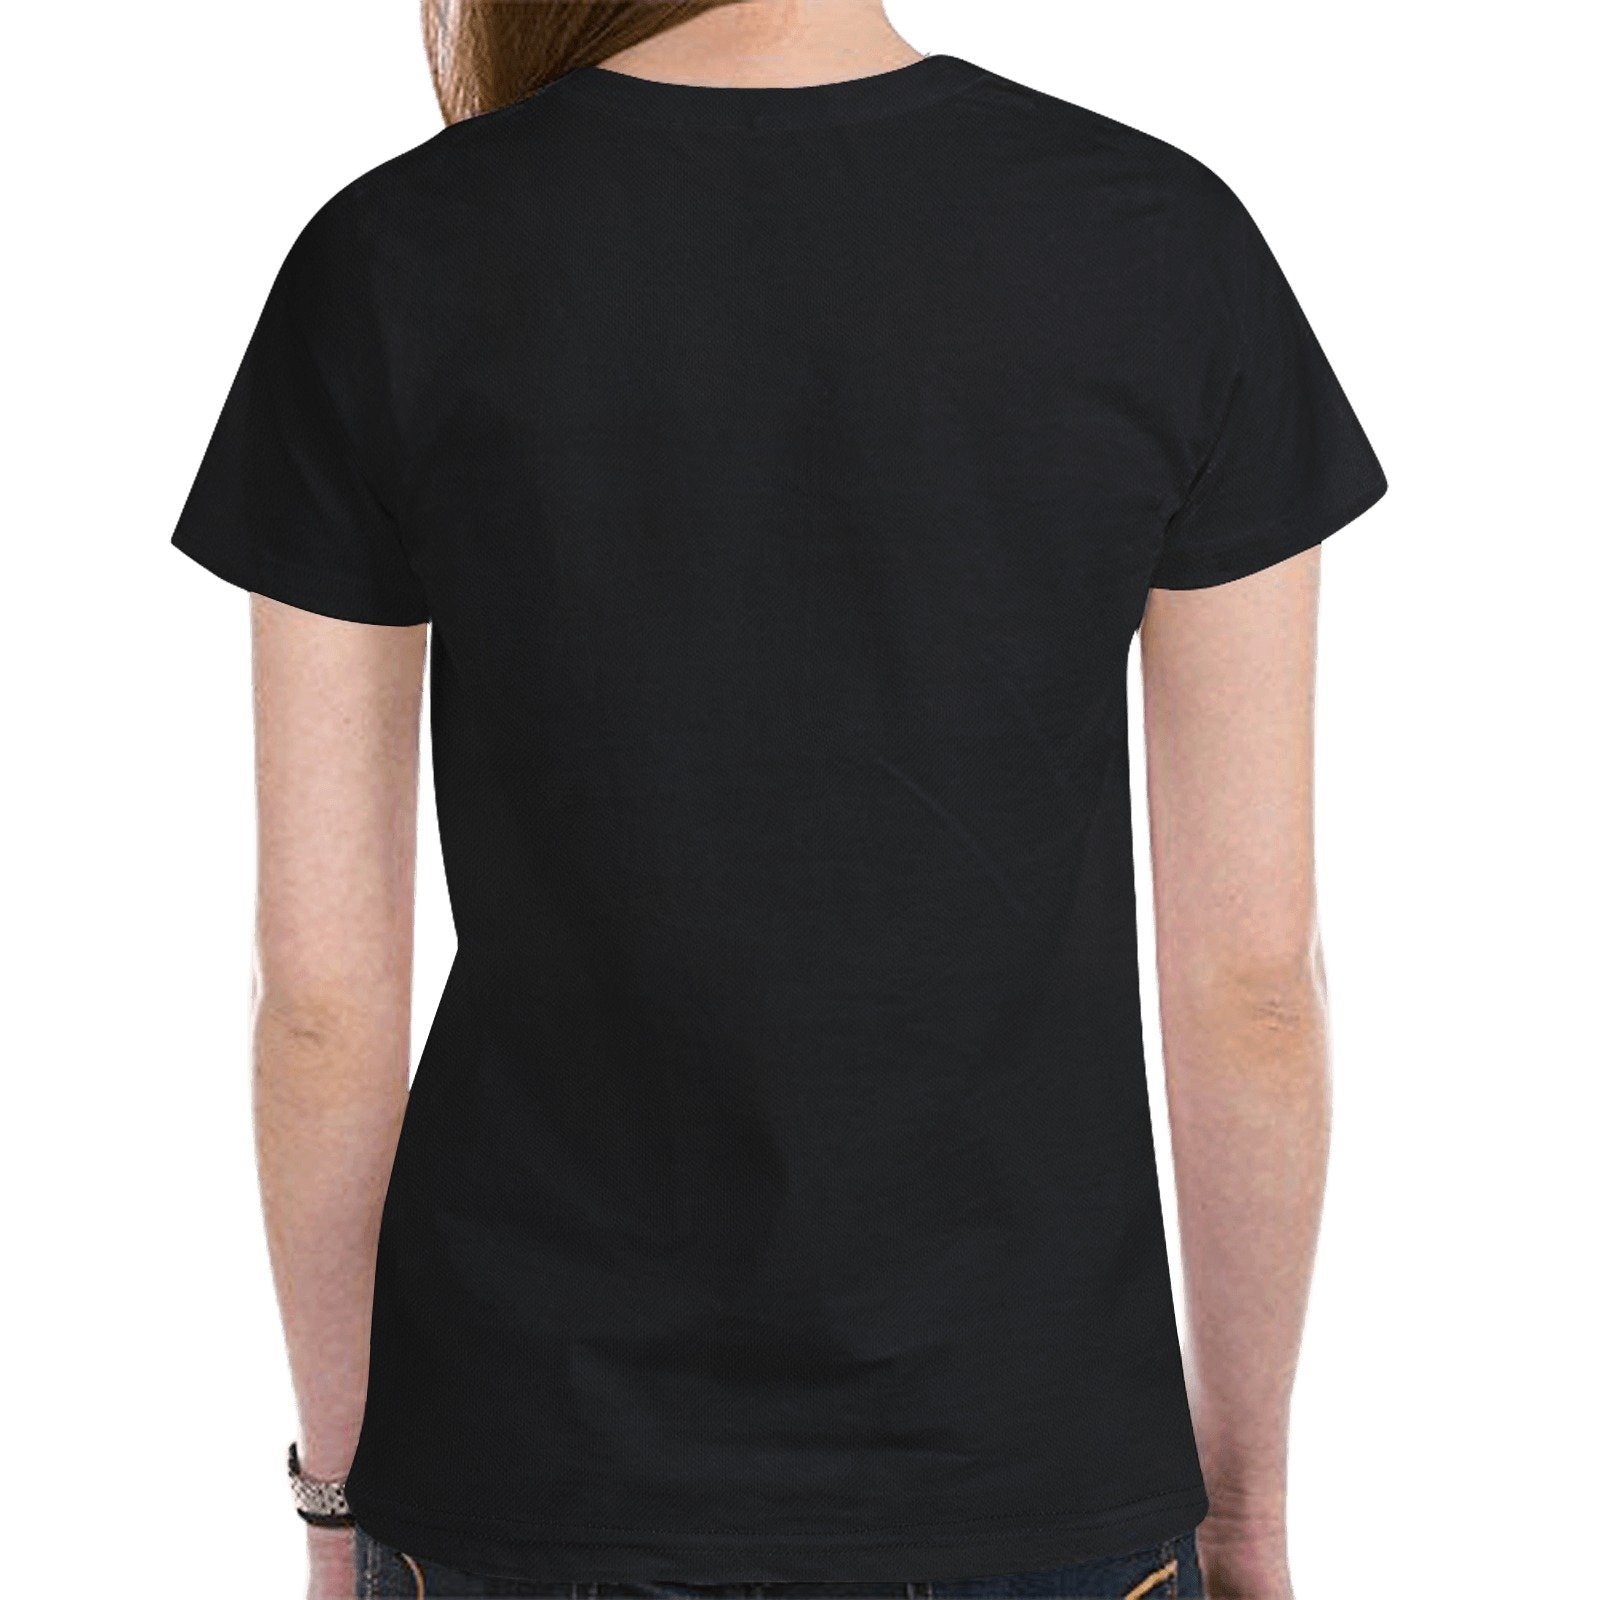 49 Dzine Logomark Dress Code New All Over Print T-shirt for Women (Model T45) New All Over Print T-shirt for Women (T45) e-joyer 